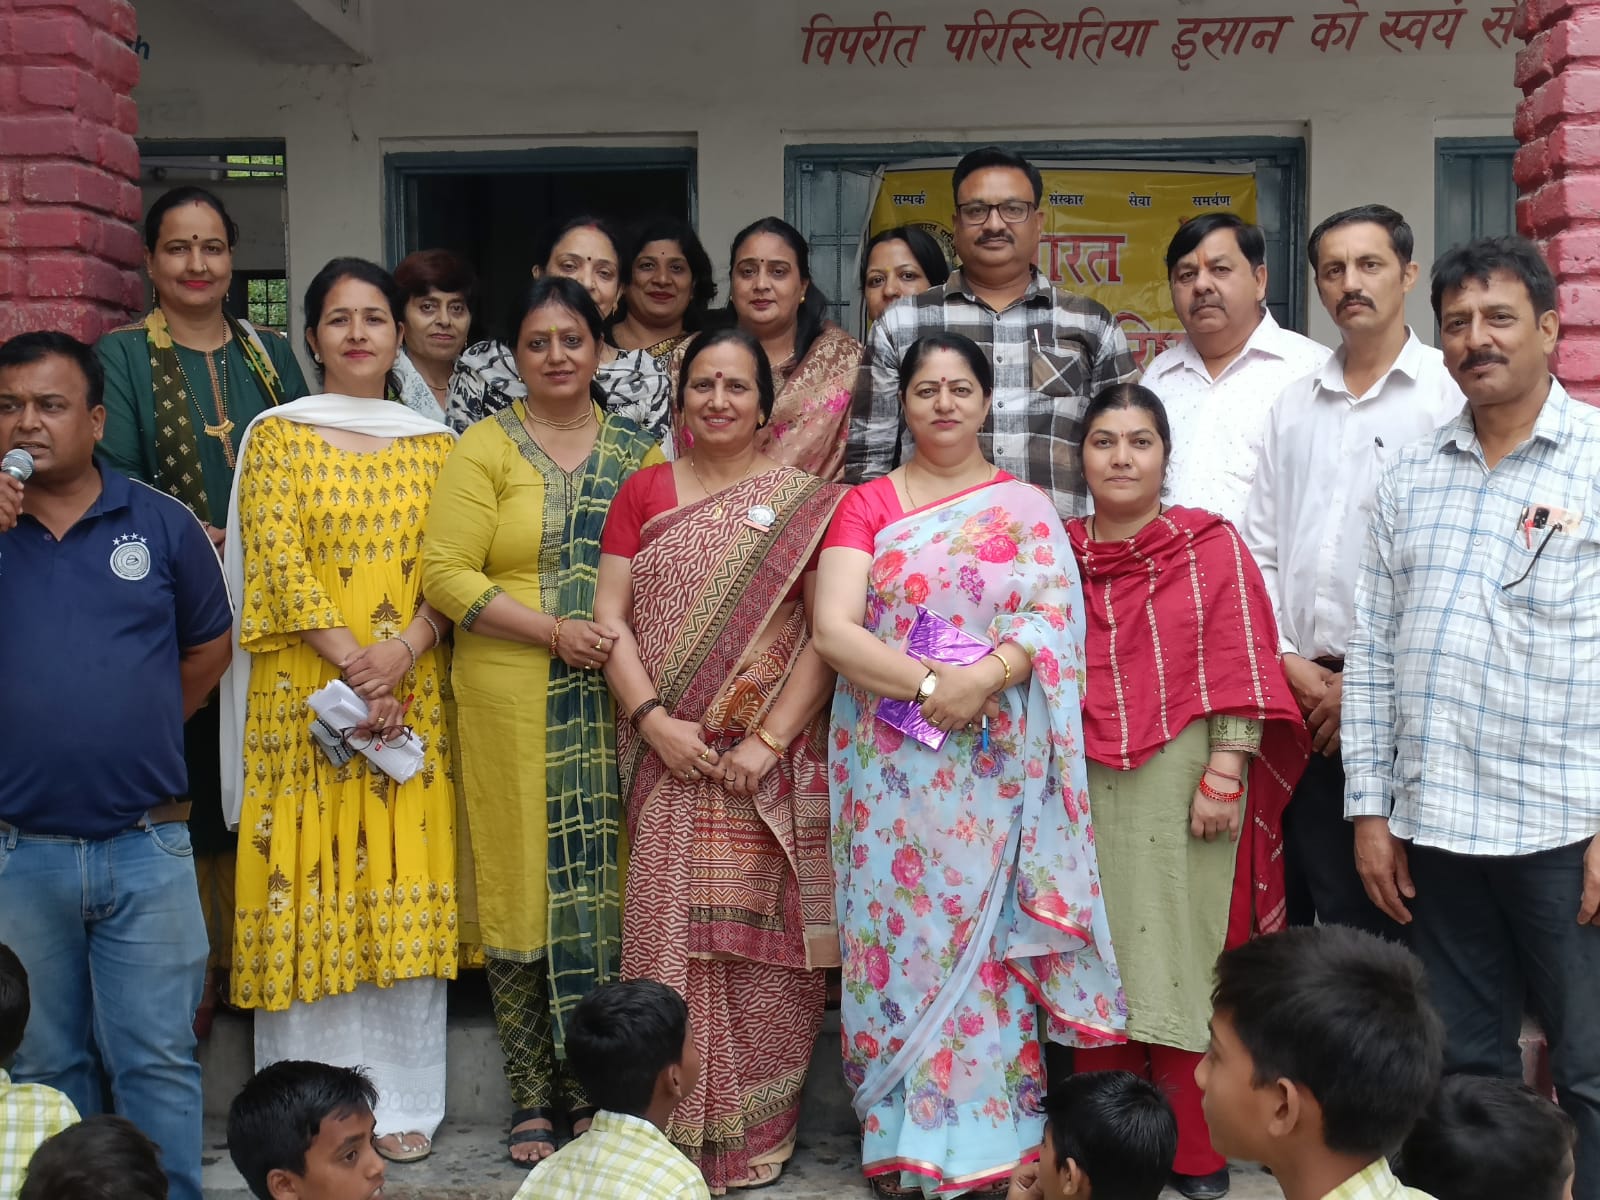 महिला भारत विकास परिषद शाखा ने रामपुर घाट में मनाया विश्व तंबाकू निषेध दिवस